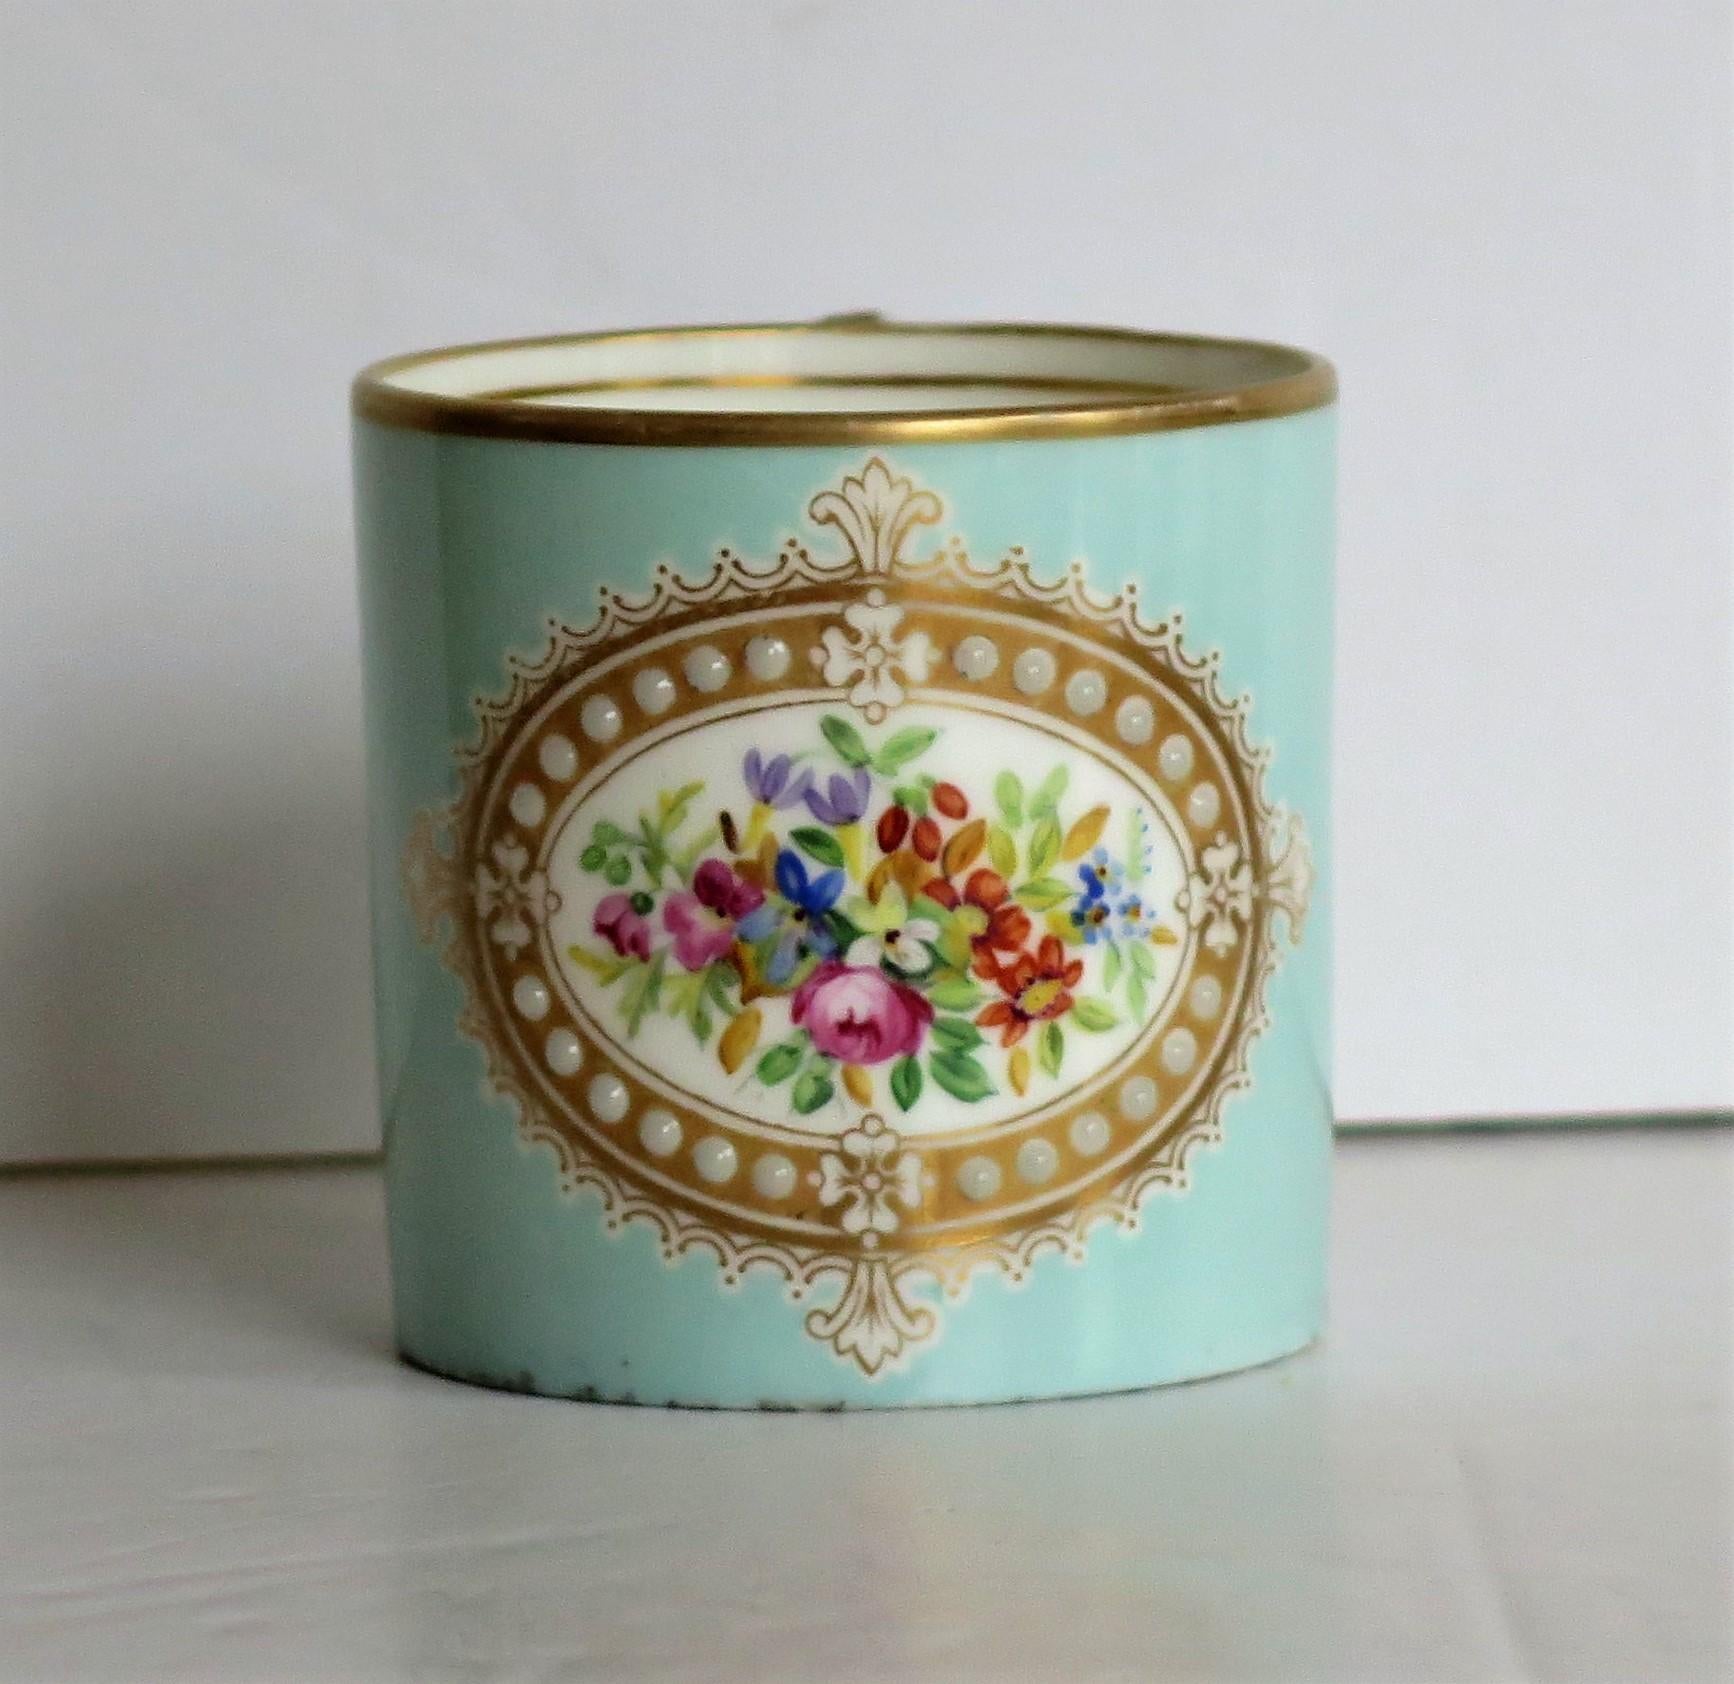 Il s'agit d'une très belle boîte à café ornée de bijoux, peinte à la main et dorée dans le style français de Sèvres, probablement fabriquée par eux et datant du début du 19e siècle, vers 1810.

Cette canette à café est bien remplie, elle est